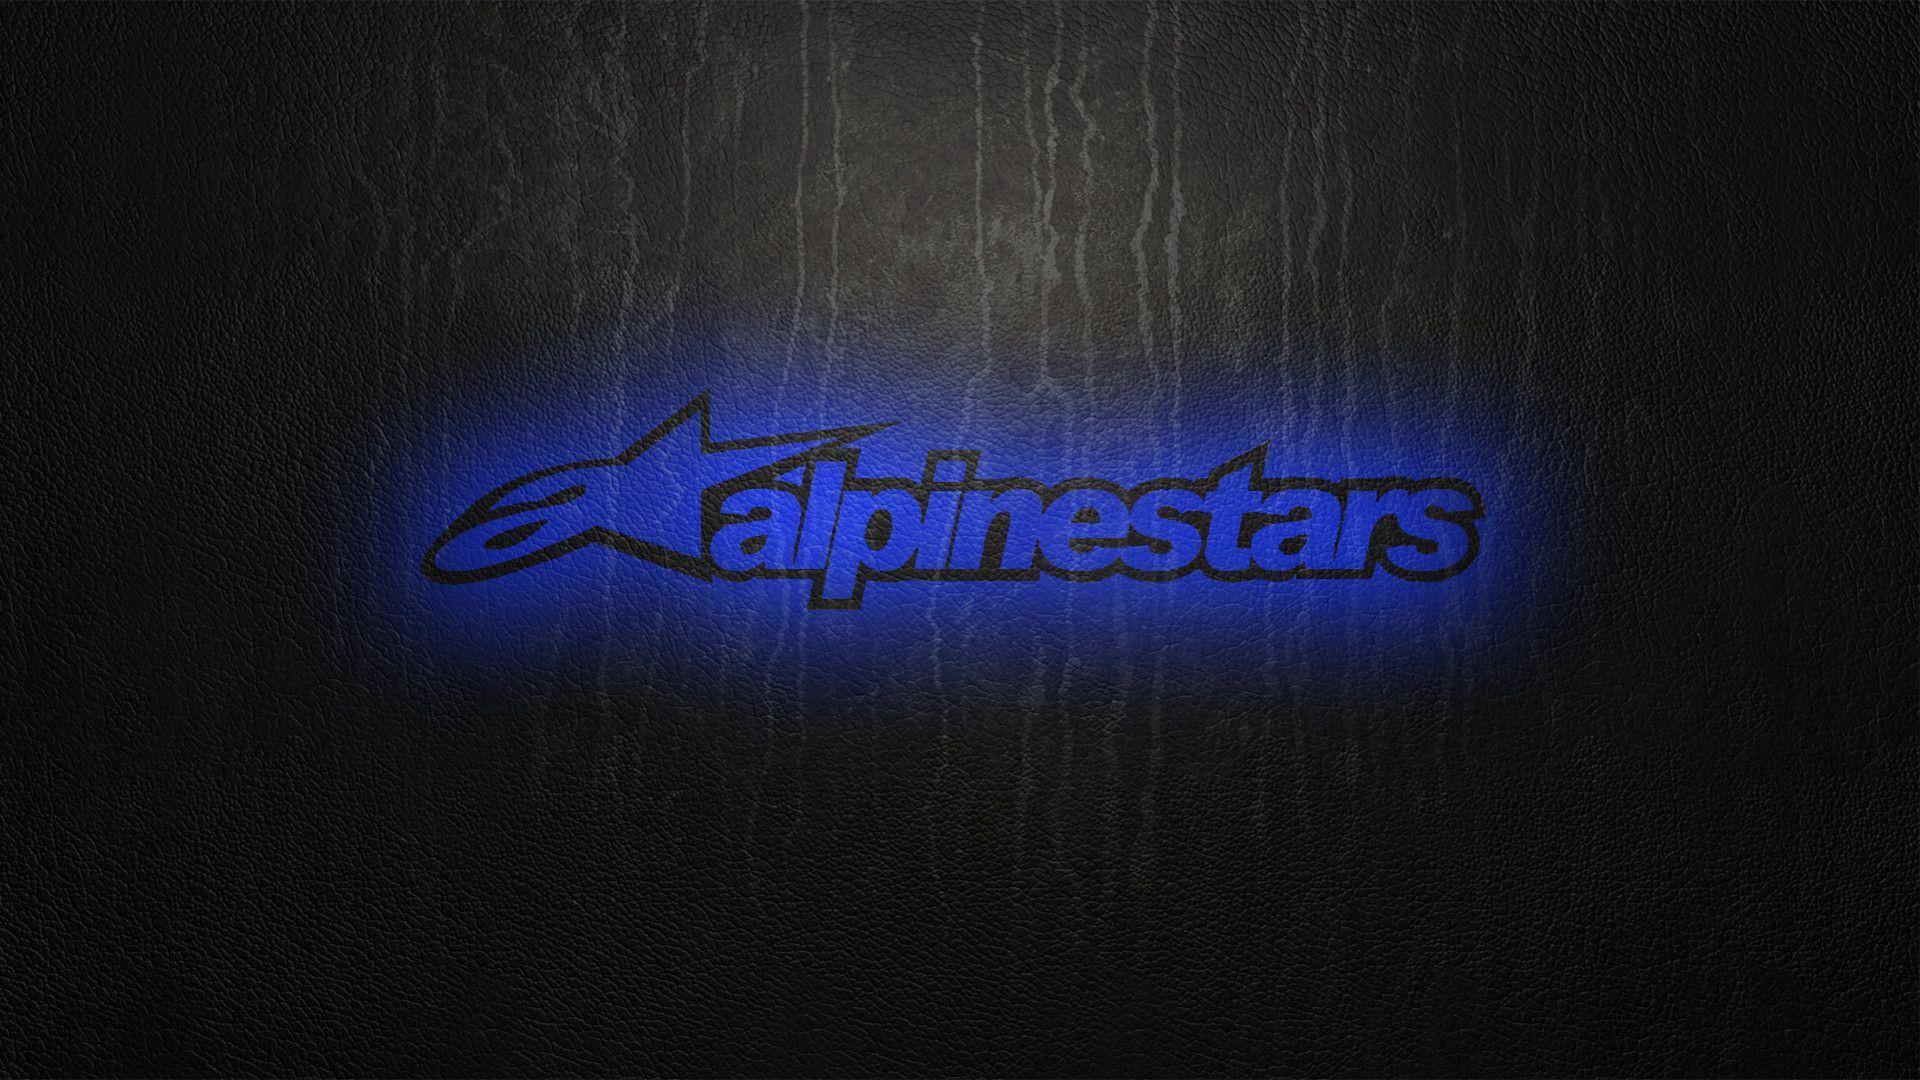 Alpinestars Wallpaper Android. Wallsaved